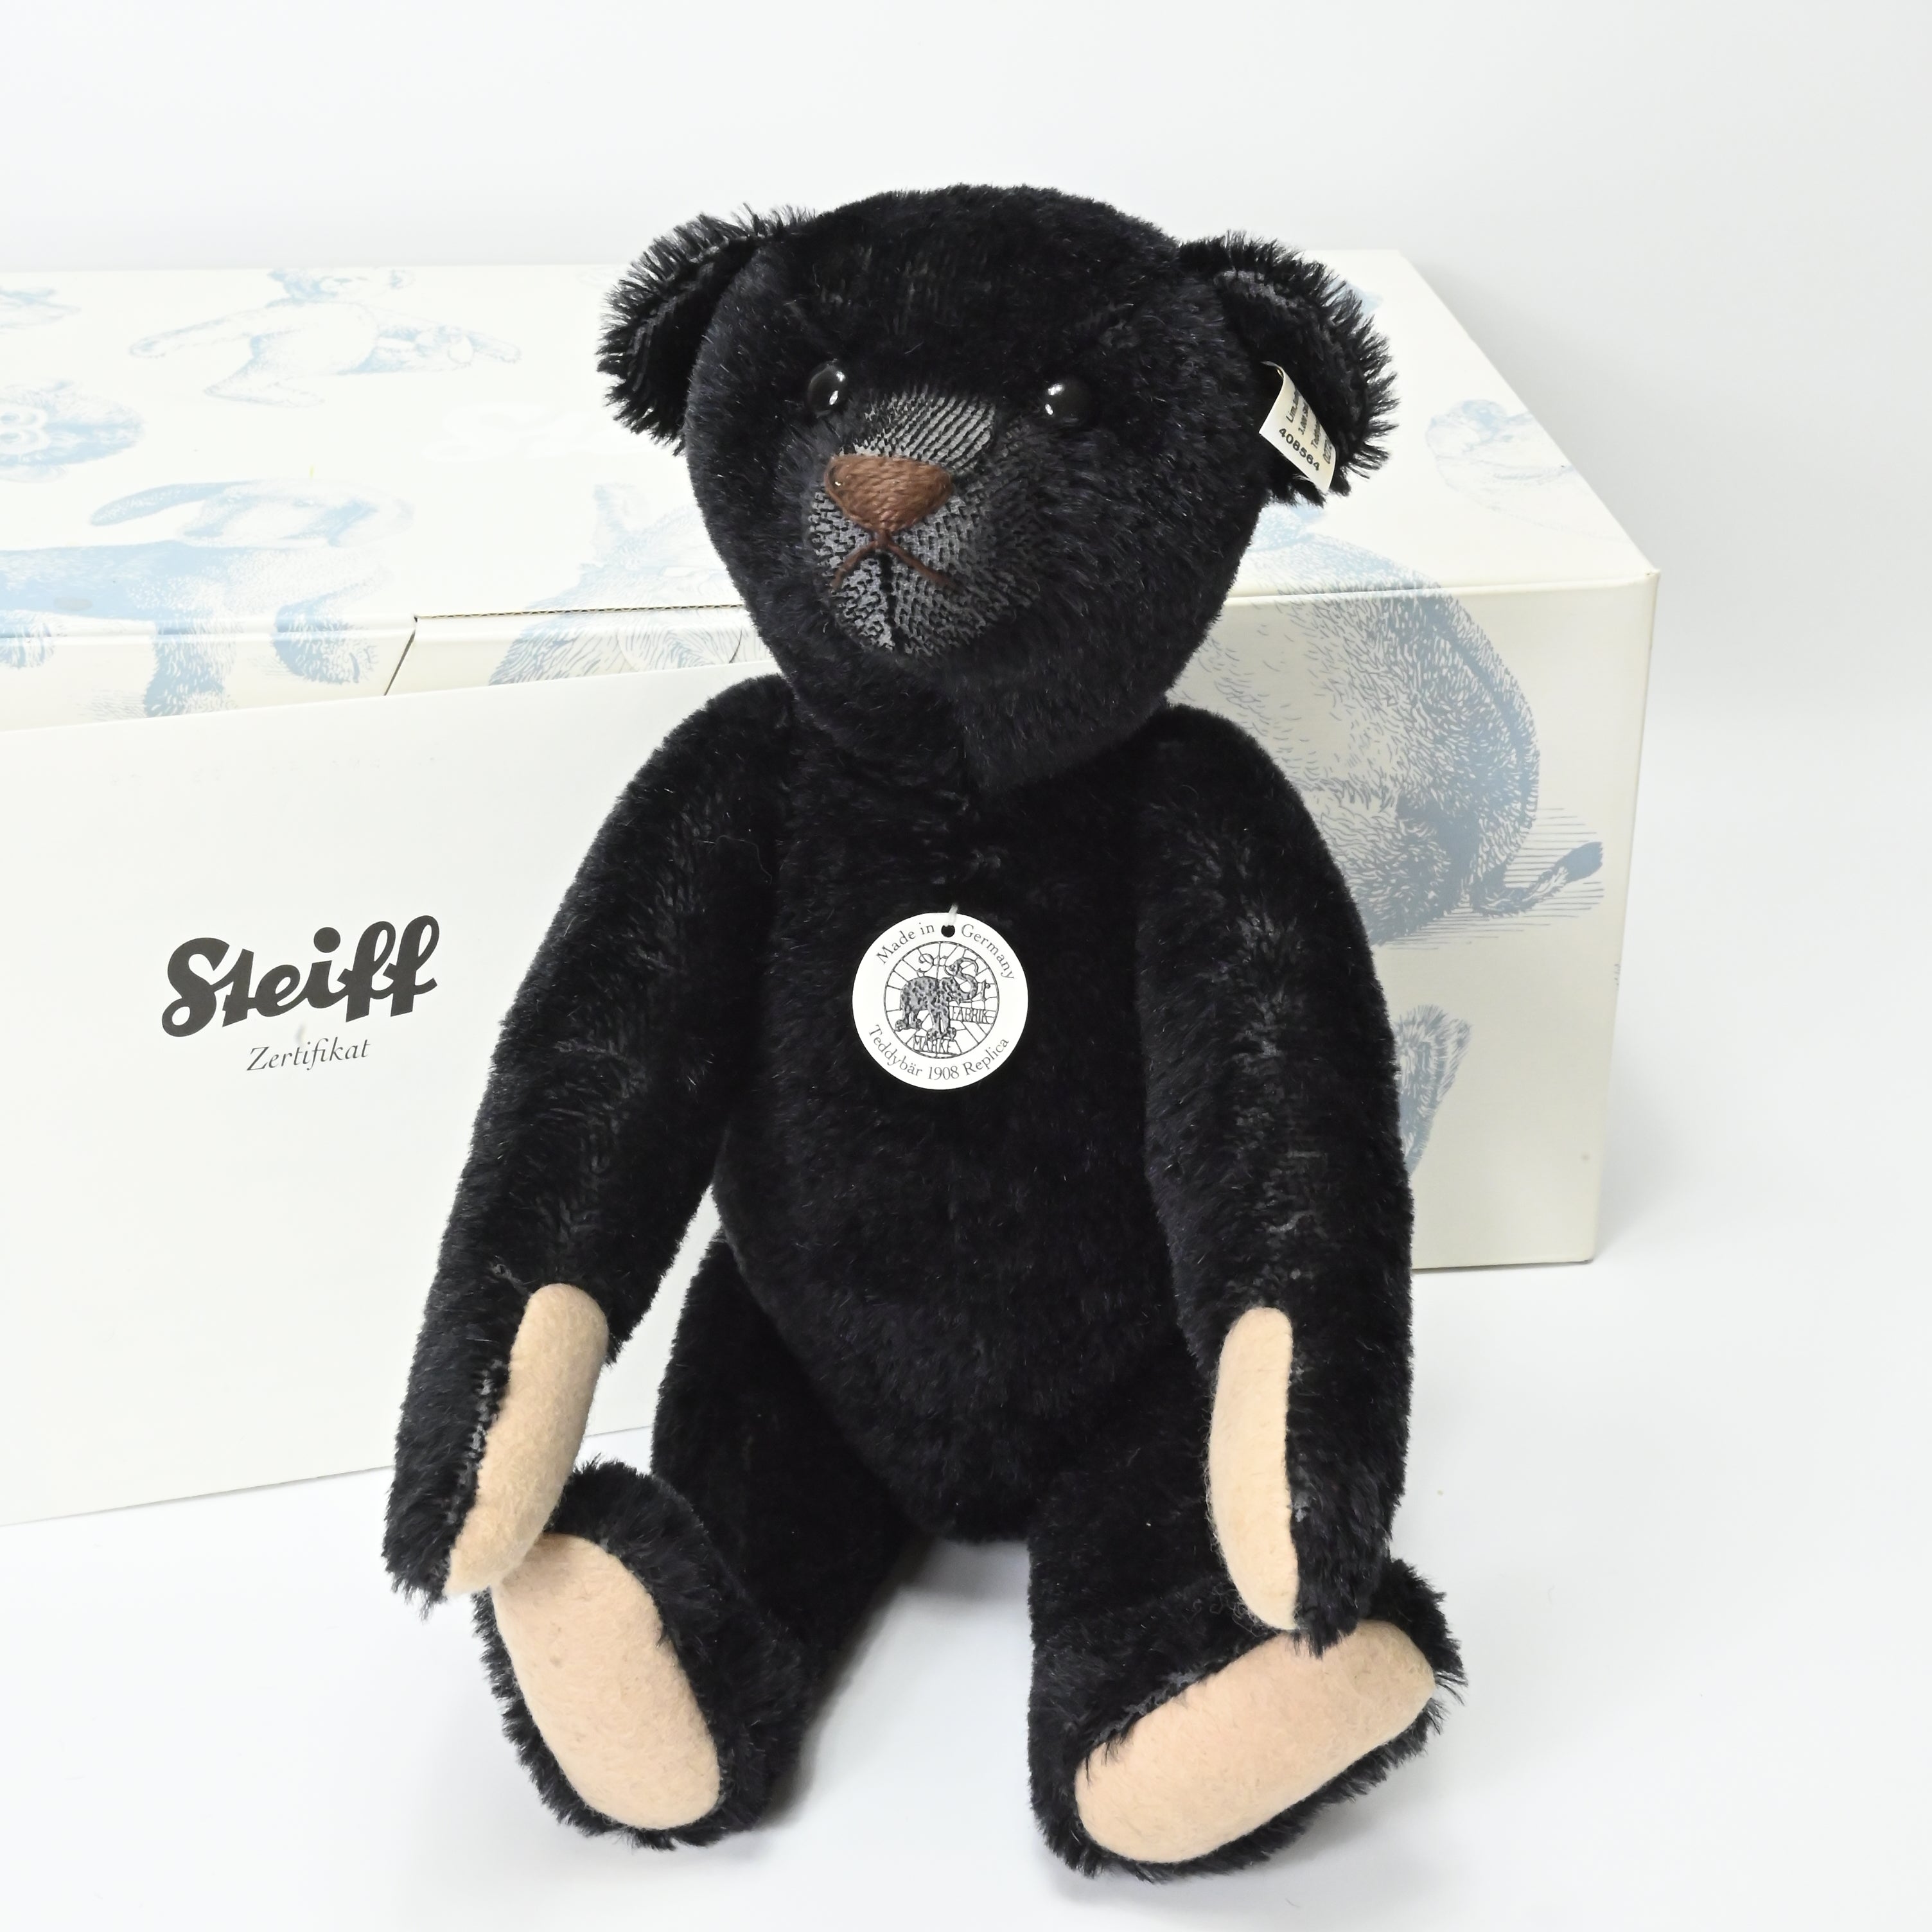 Steiff Teddy Bear Limited Edition Black 1908 Replica - 408564 